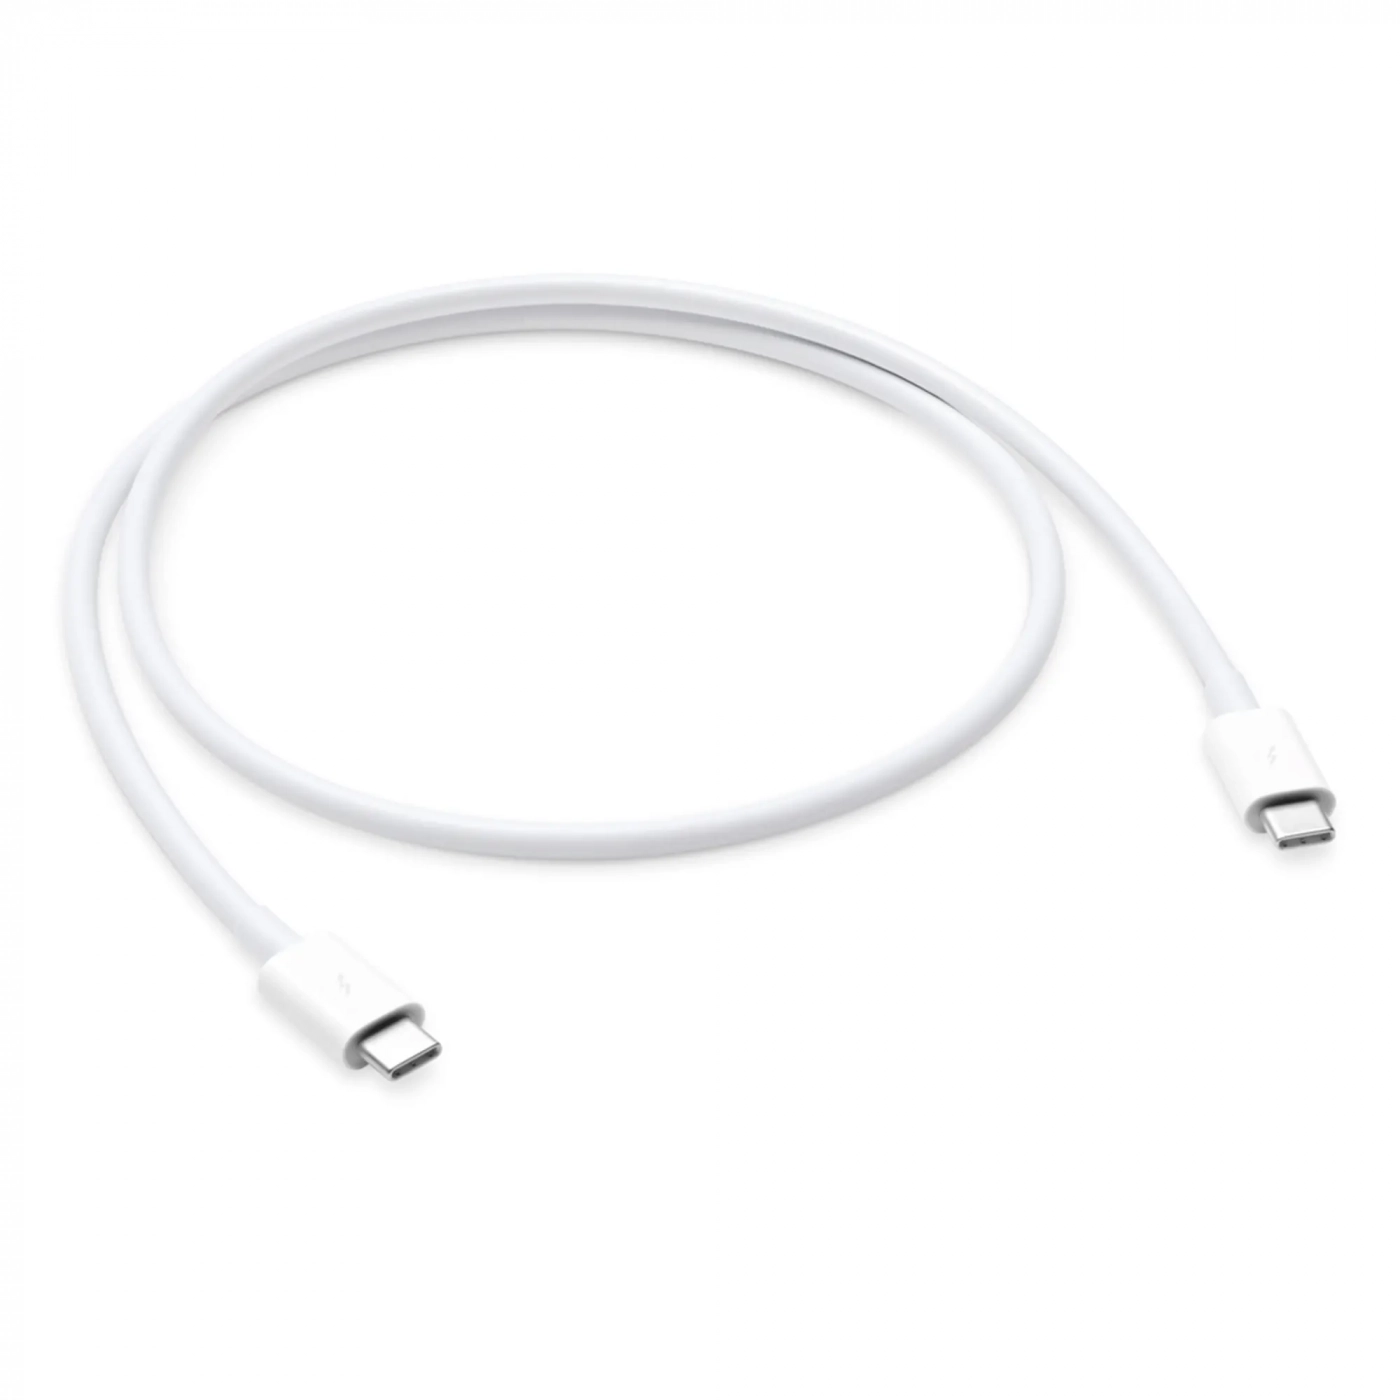 Купить Дата кабель Thunderbolt 3 (USB-C) Cable 0.8m Apple (MQ4H2ZM/A) - фото 2